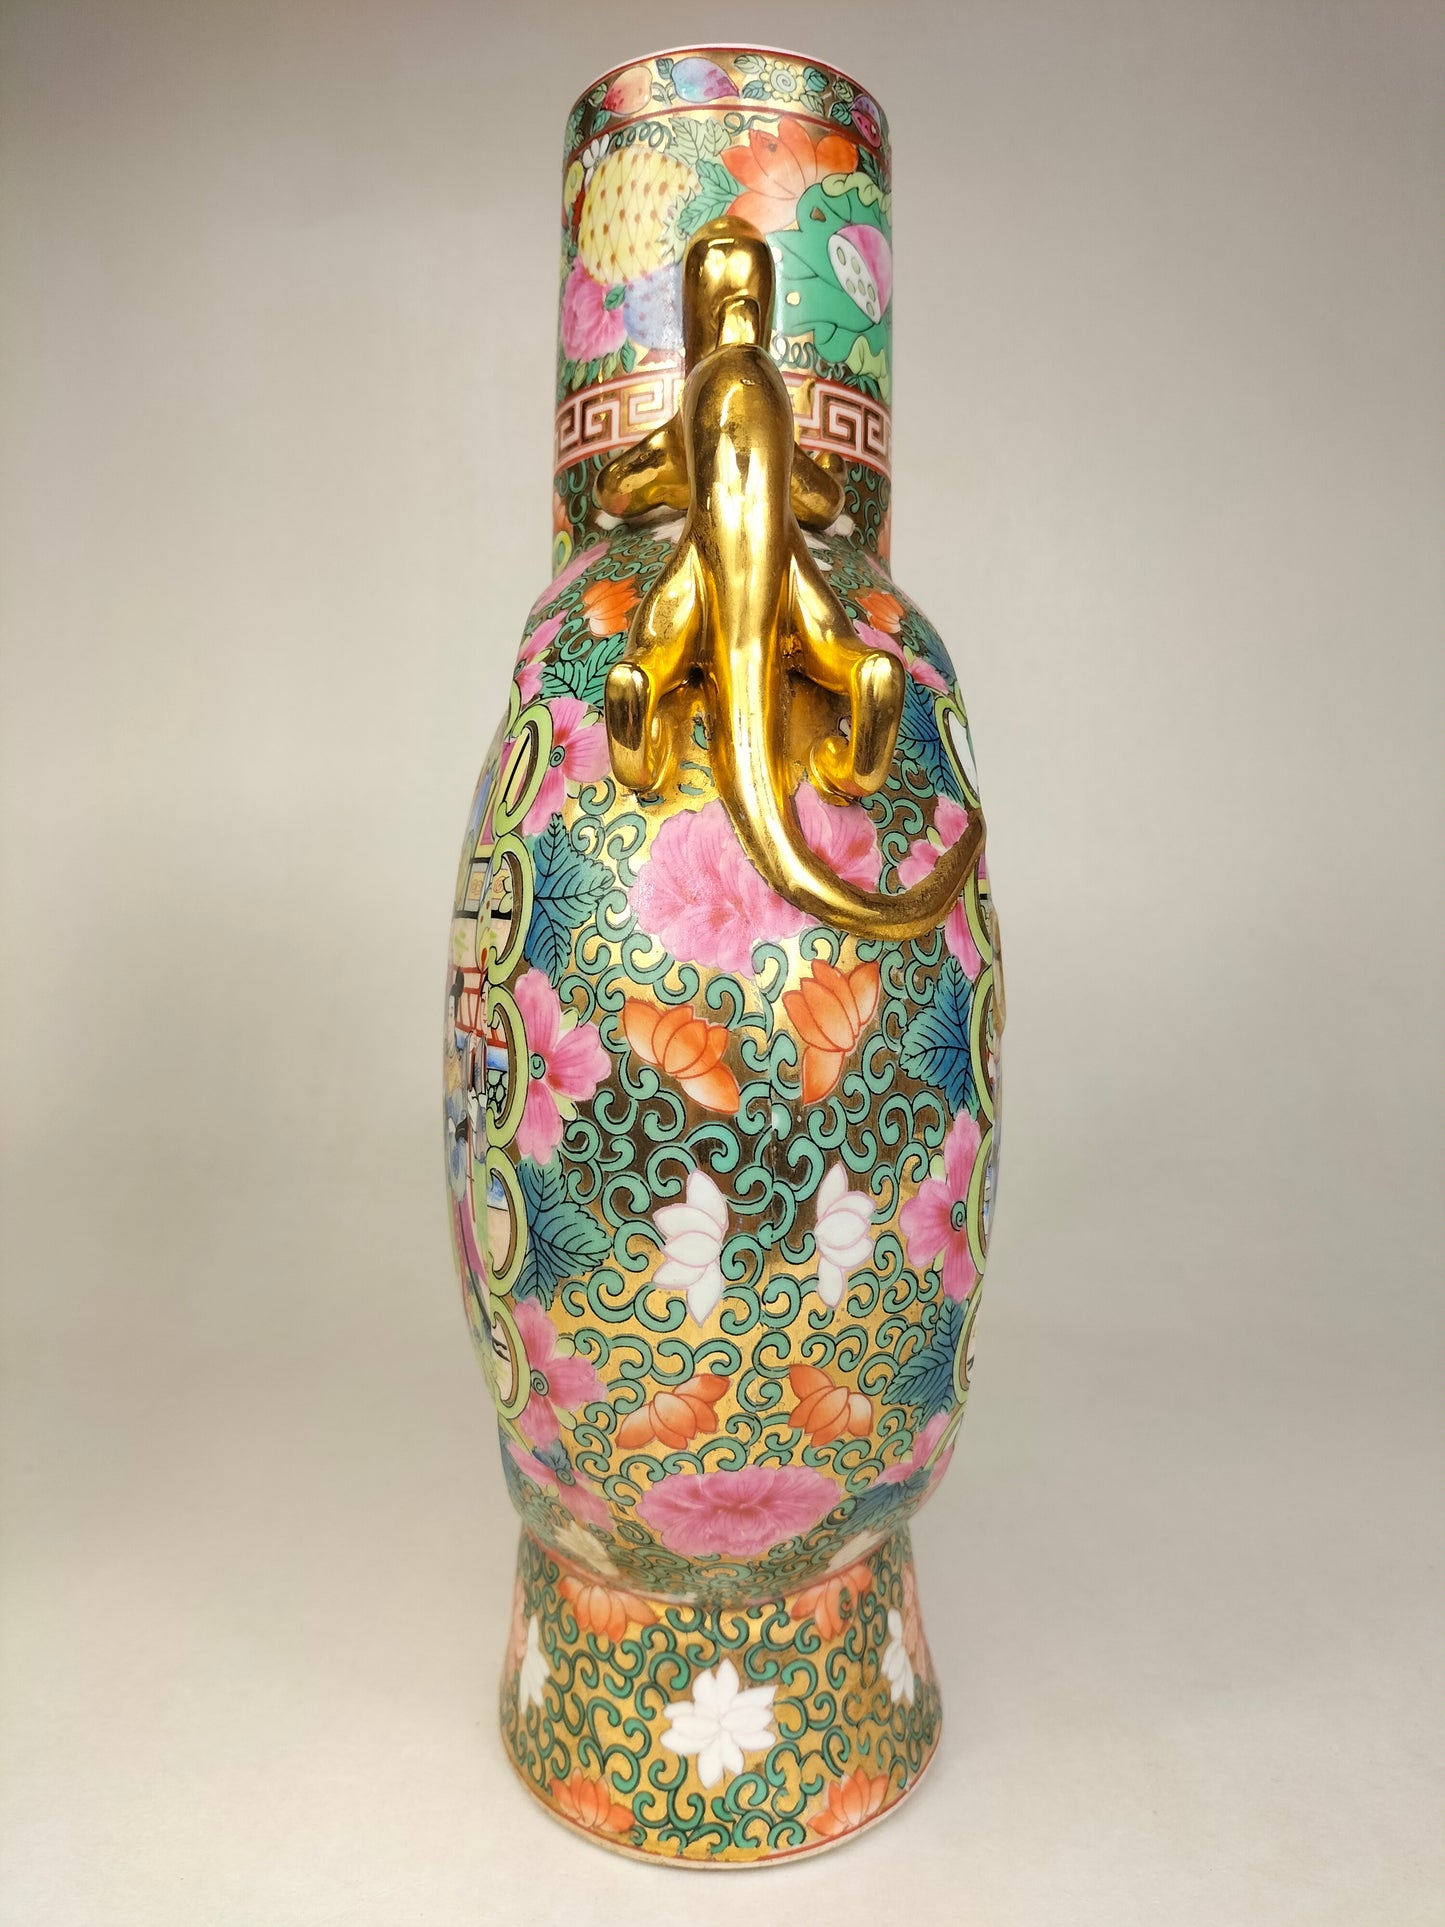 中国广州玫瑰花图案月亮瓶，饰以人物和花卉 // 20 世纪